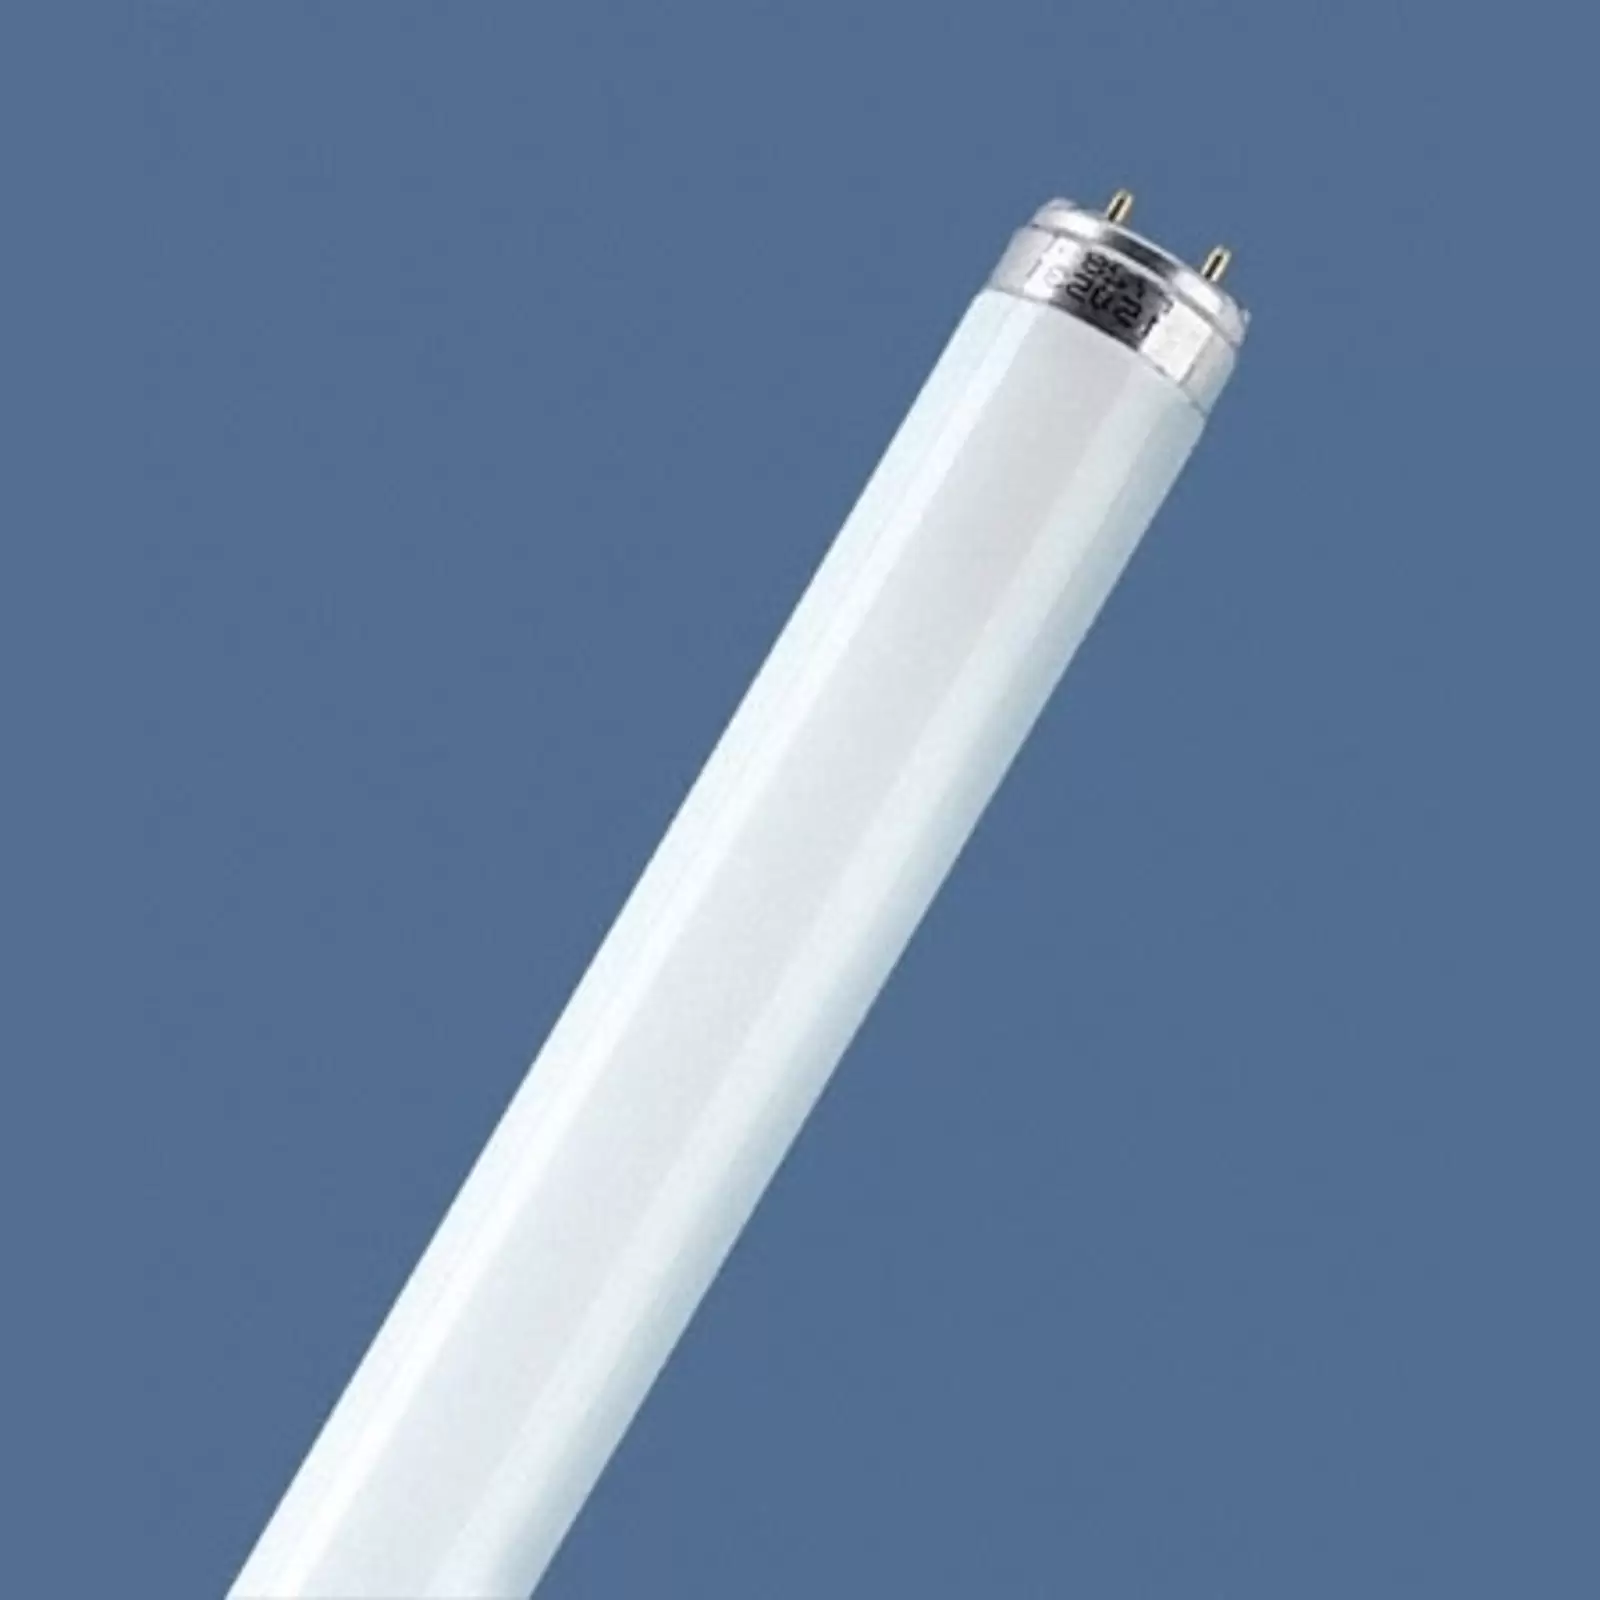 Fluoreszkáló cső G13 T8 16W 840 Lumilux